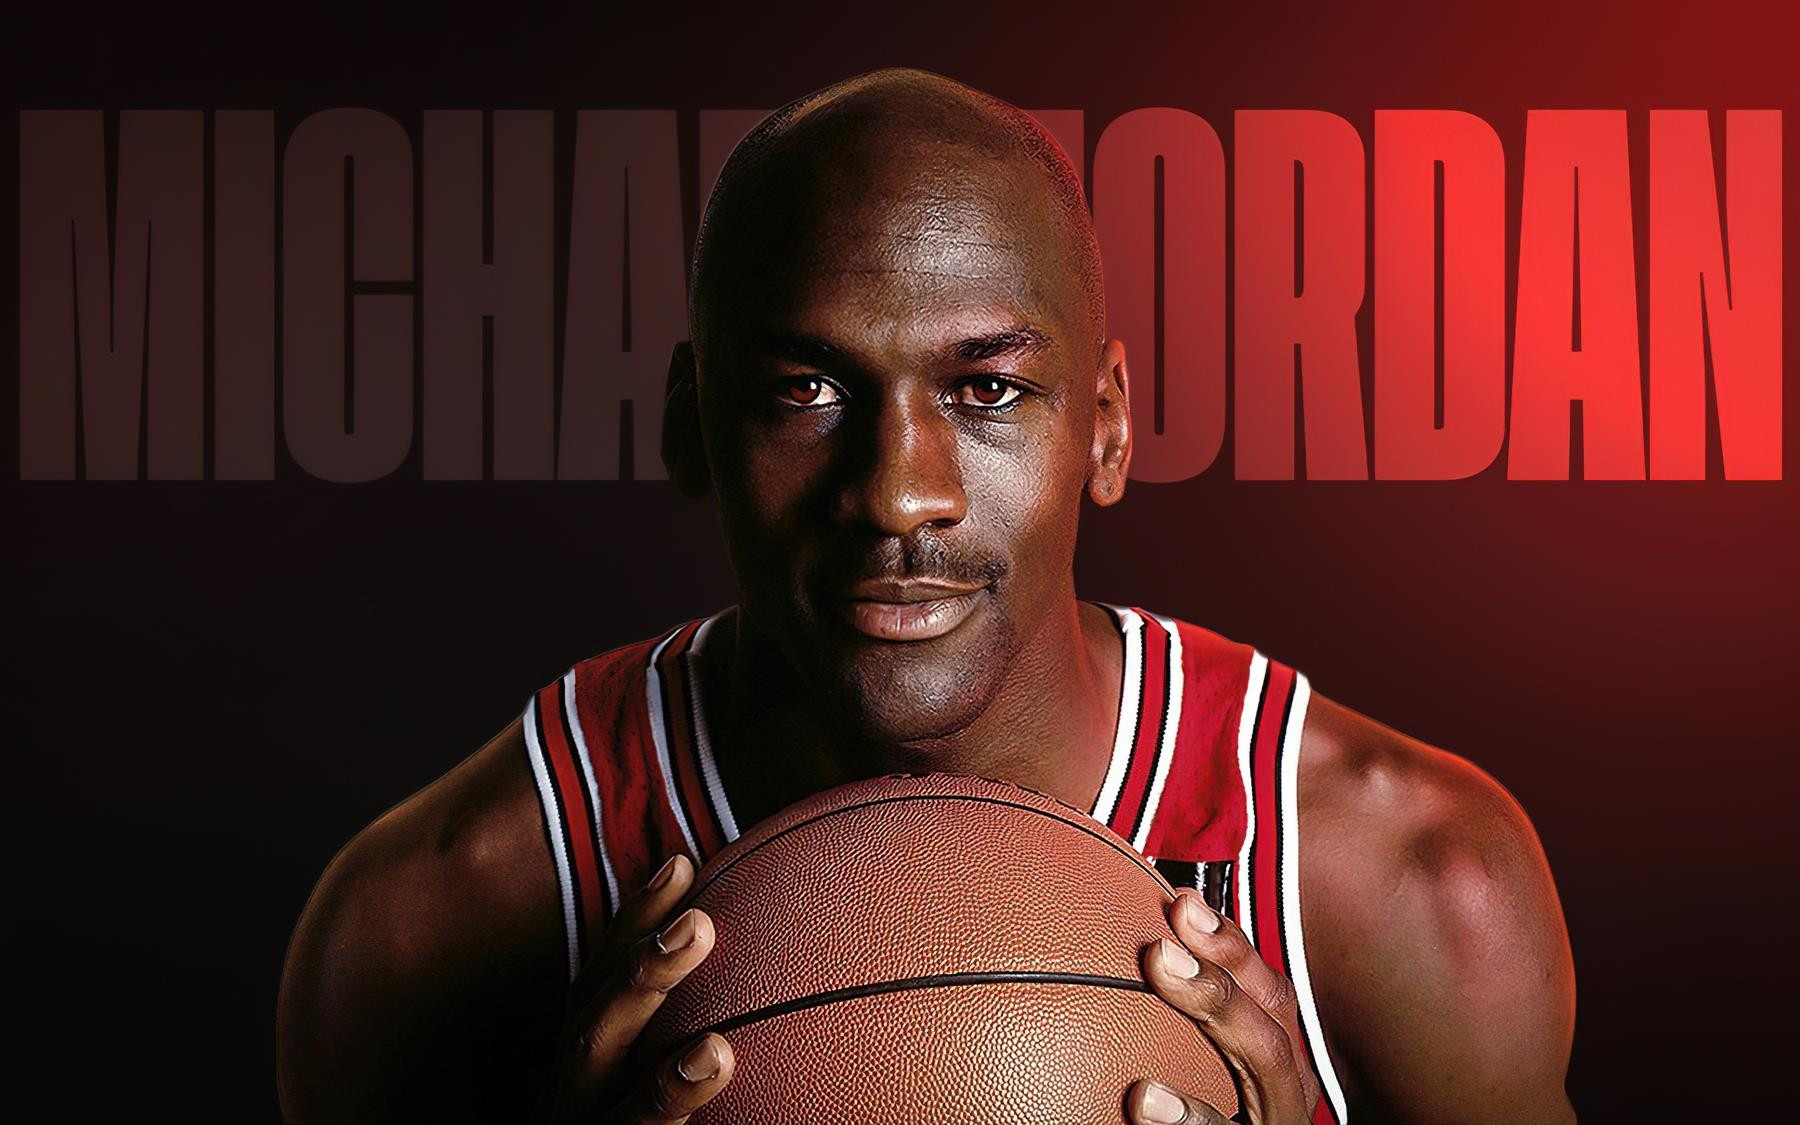 Chuyện cũ mà không cũ: Bị siêu sao bóng rổ Michael Jordan kiện vì vi phạm bản quyền hình ảnh, tự tiện in ấn phẩm phi thương mại - Ảnh 1.